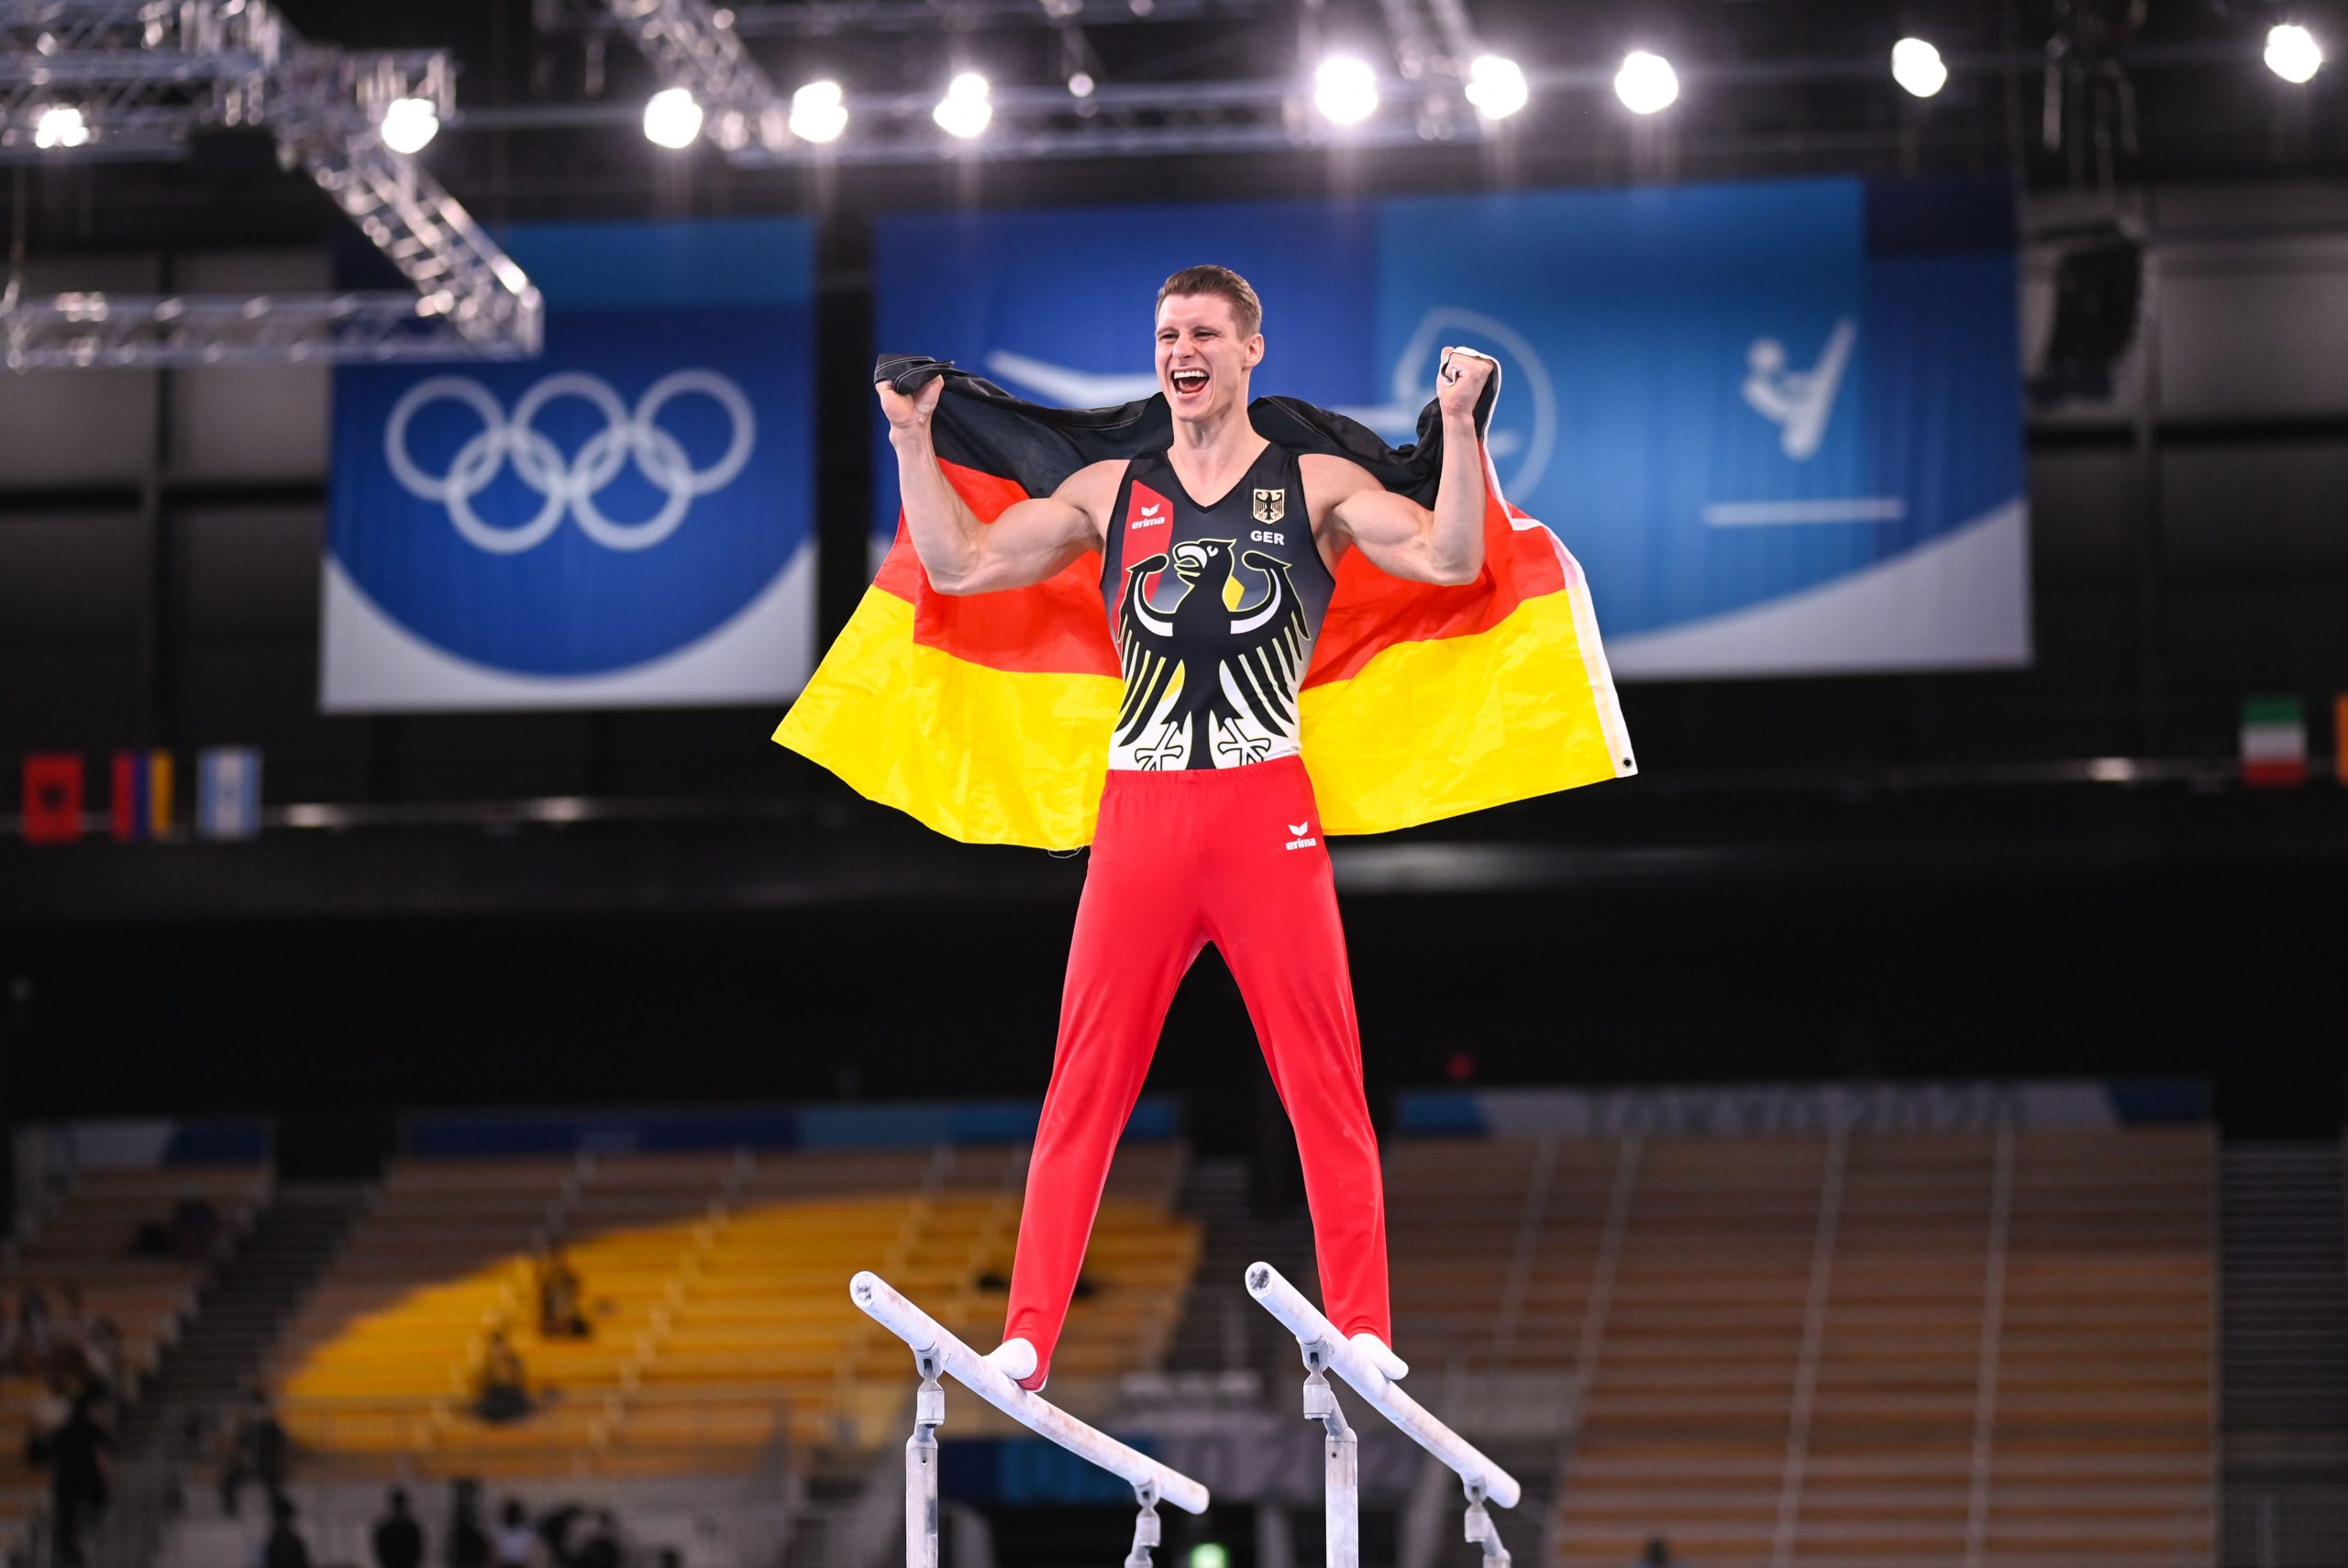 Lukas Dauser feiert seine Silbermedaille bei den Spielen in Tokio.